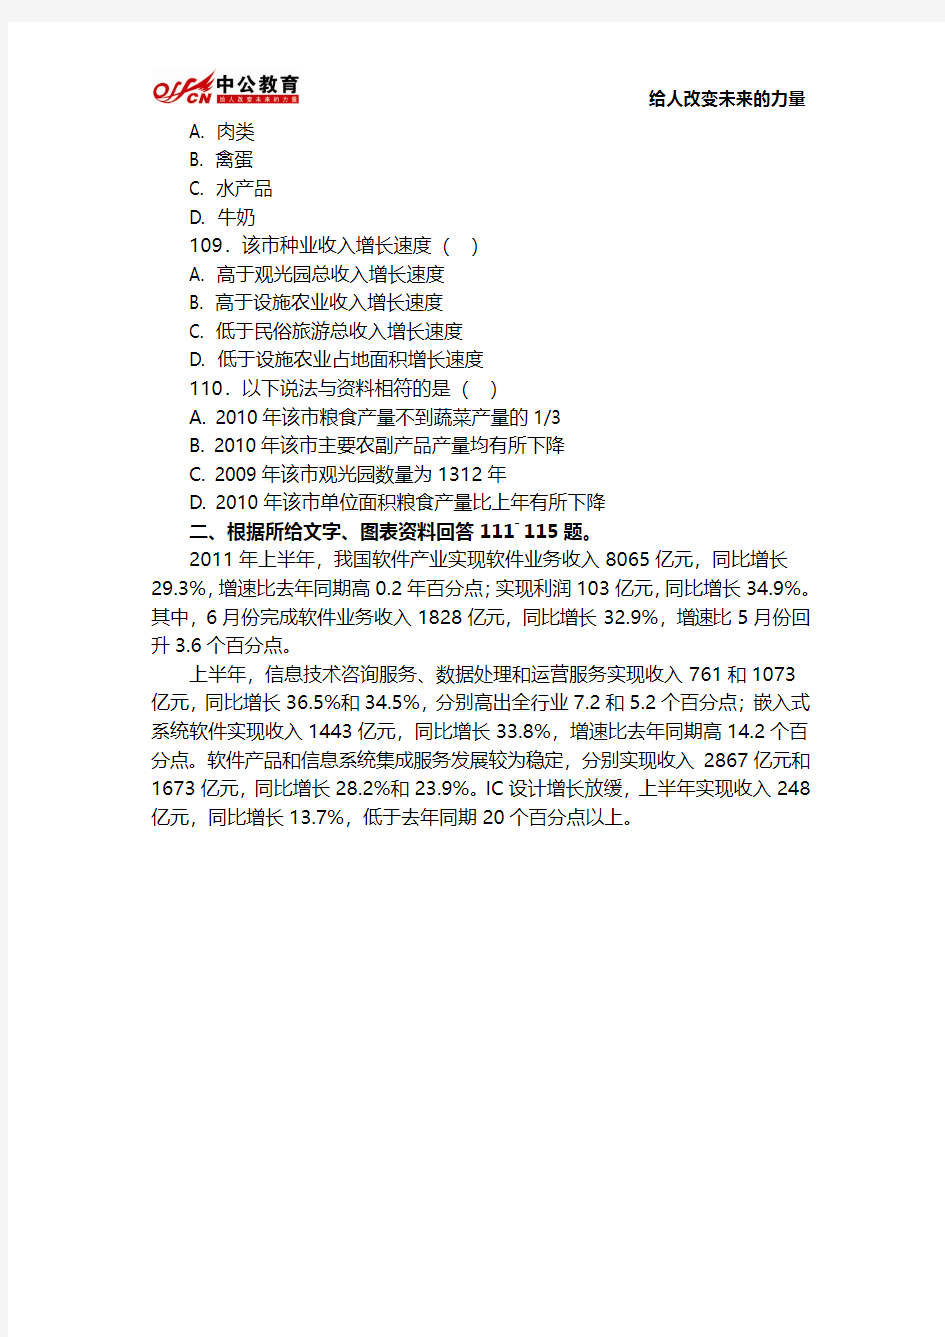 2013年湖南省公务员考试行测真题及答案：资料分析部分